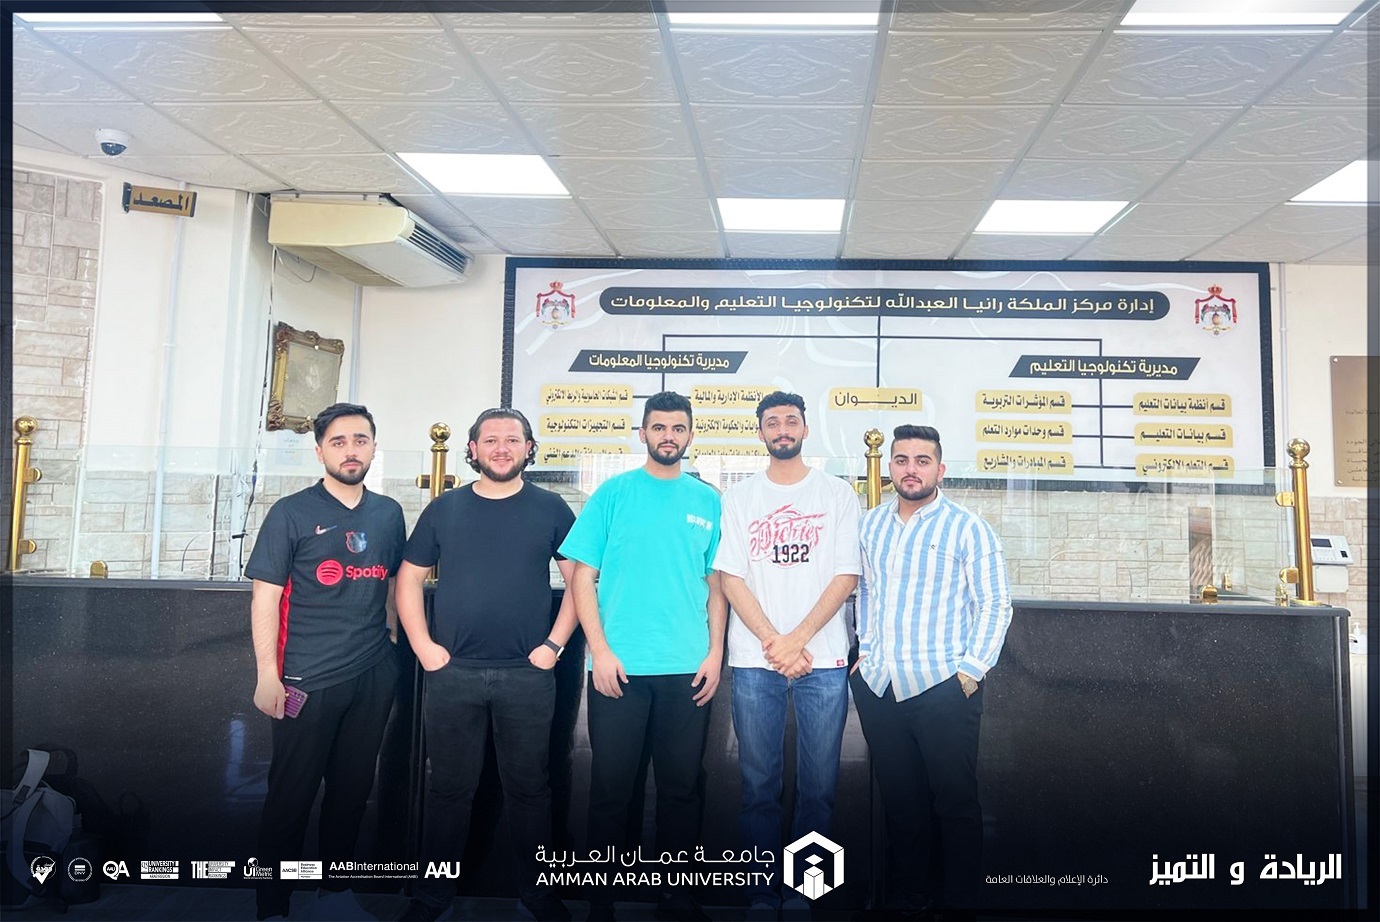 زيارات علمية لطلبة هندسة البرمجيات في "عمان العربية" لتعزيز مهاراتهم العملية